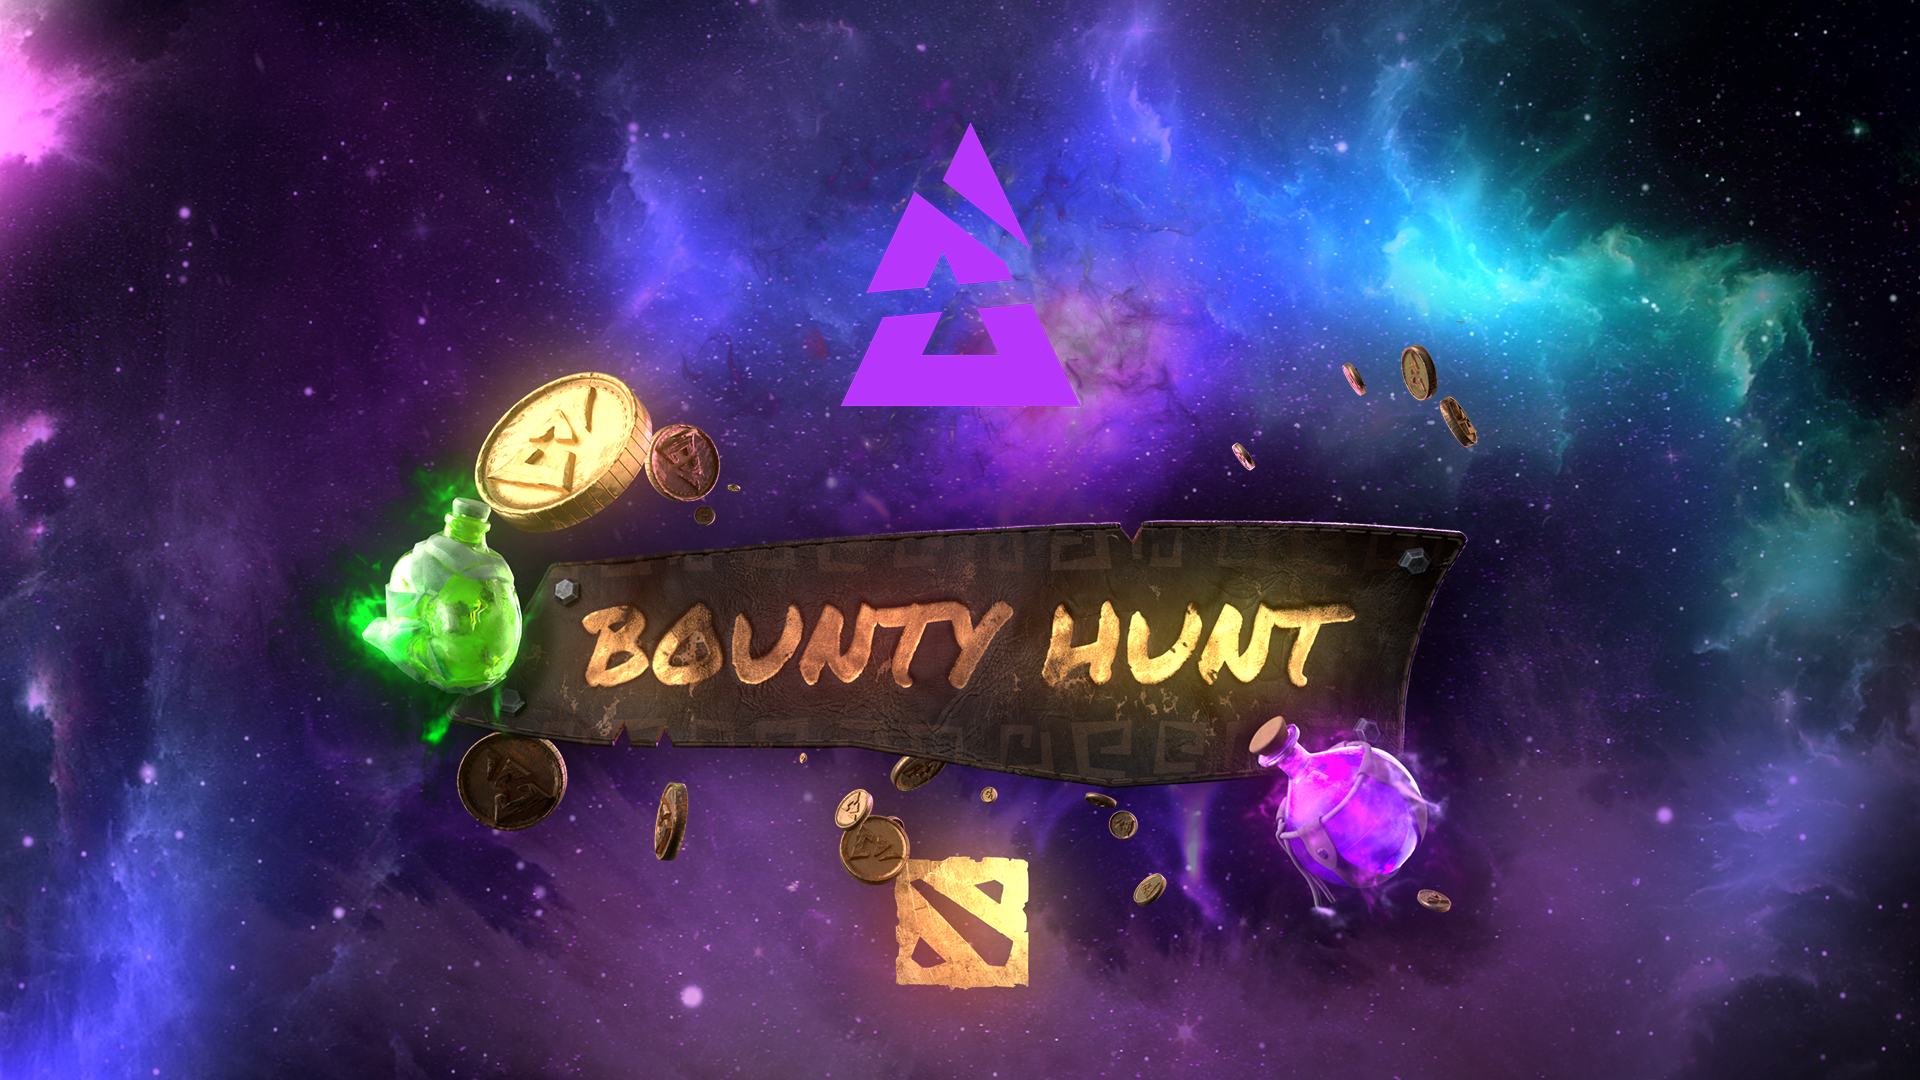 Blast Bounty Hunt key art with Dota 2 icon